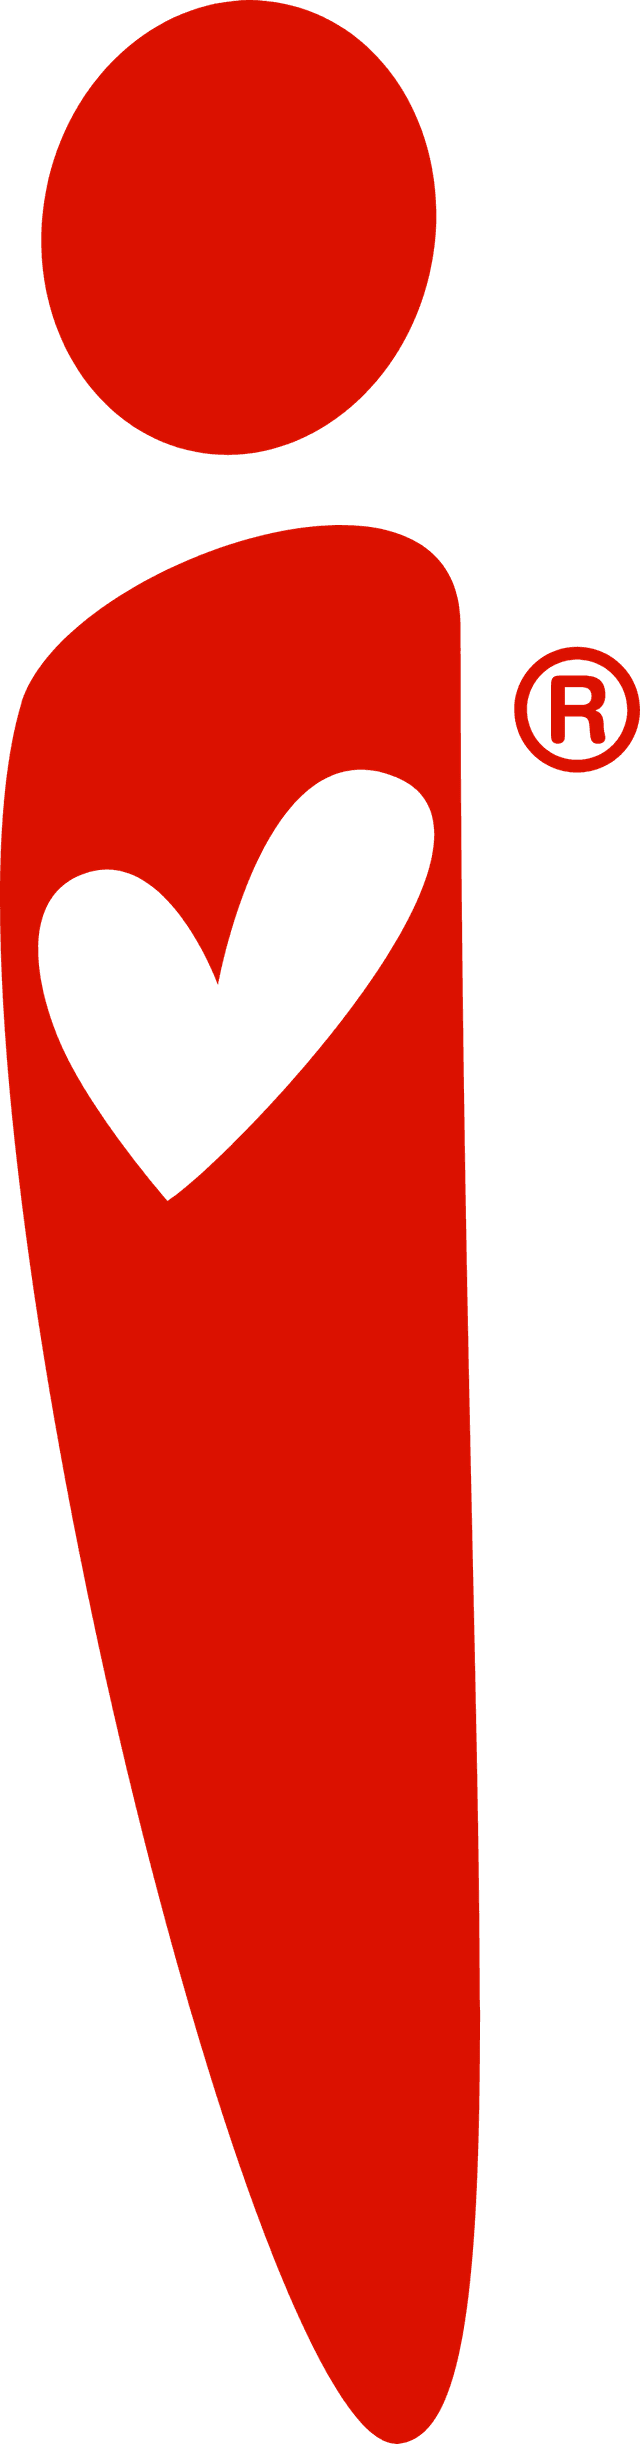 iLove Logo download